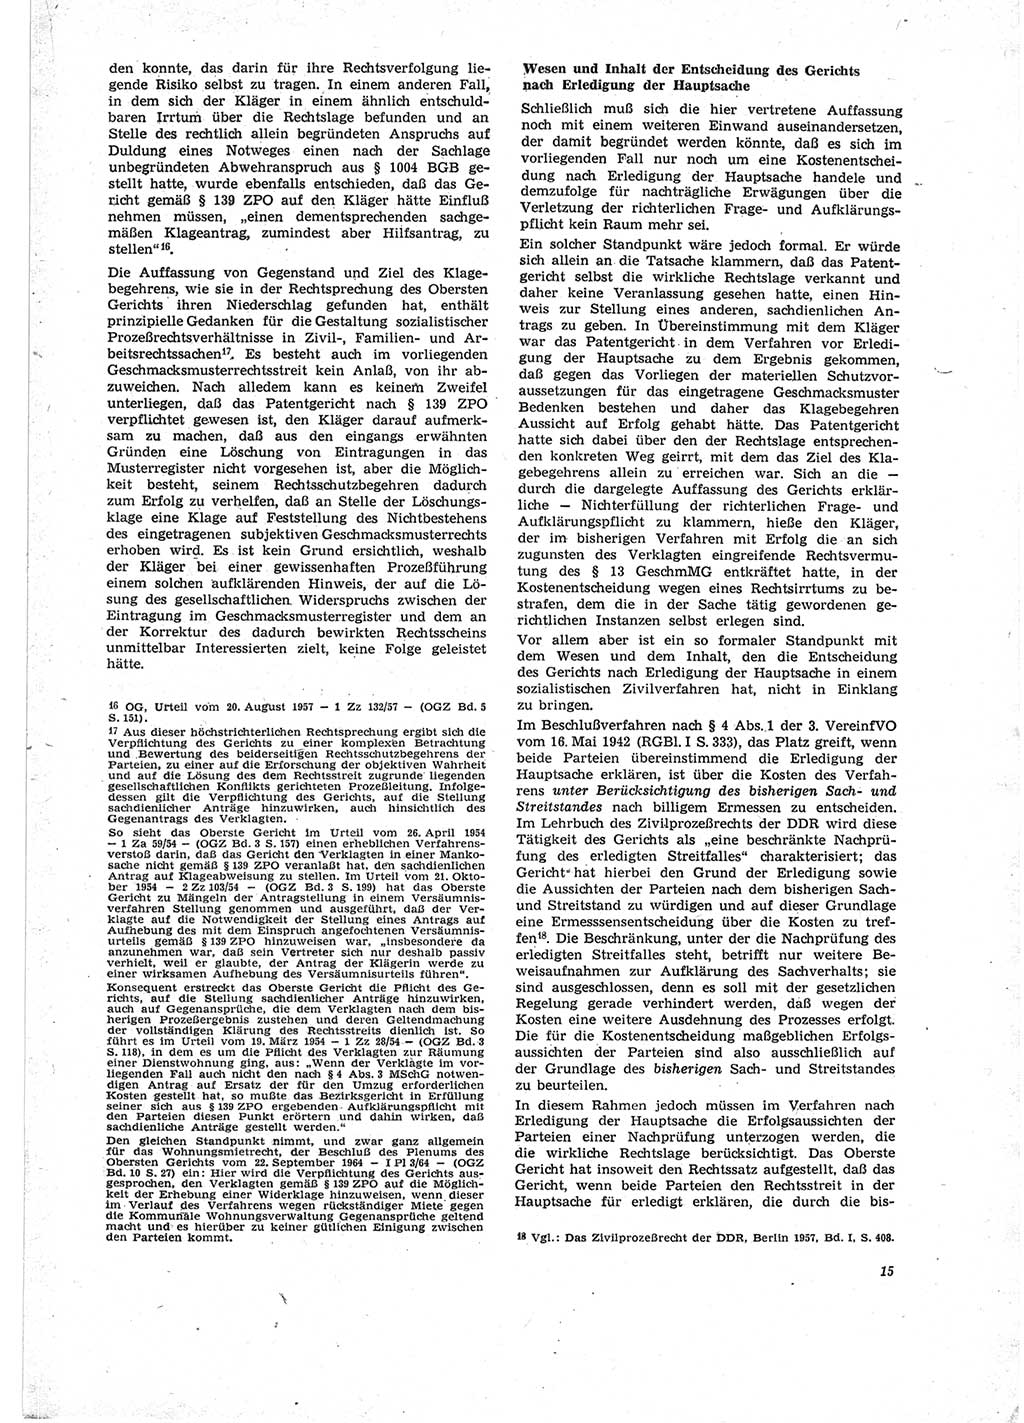 Neue Justiz (NJ), Zeitschrift für Recht und Rechtswissenschaft [Deutsche Demokratische Republik (DDR)], 23. Jahrgang 1969, Seite 15 (NJ DDR 1969, S. 15)